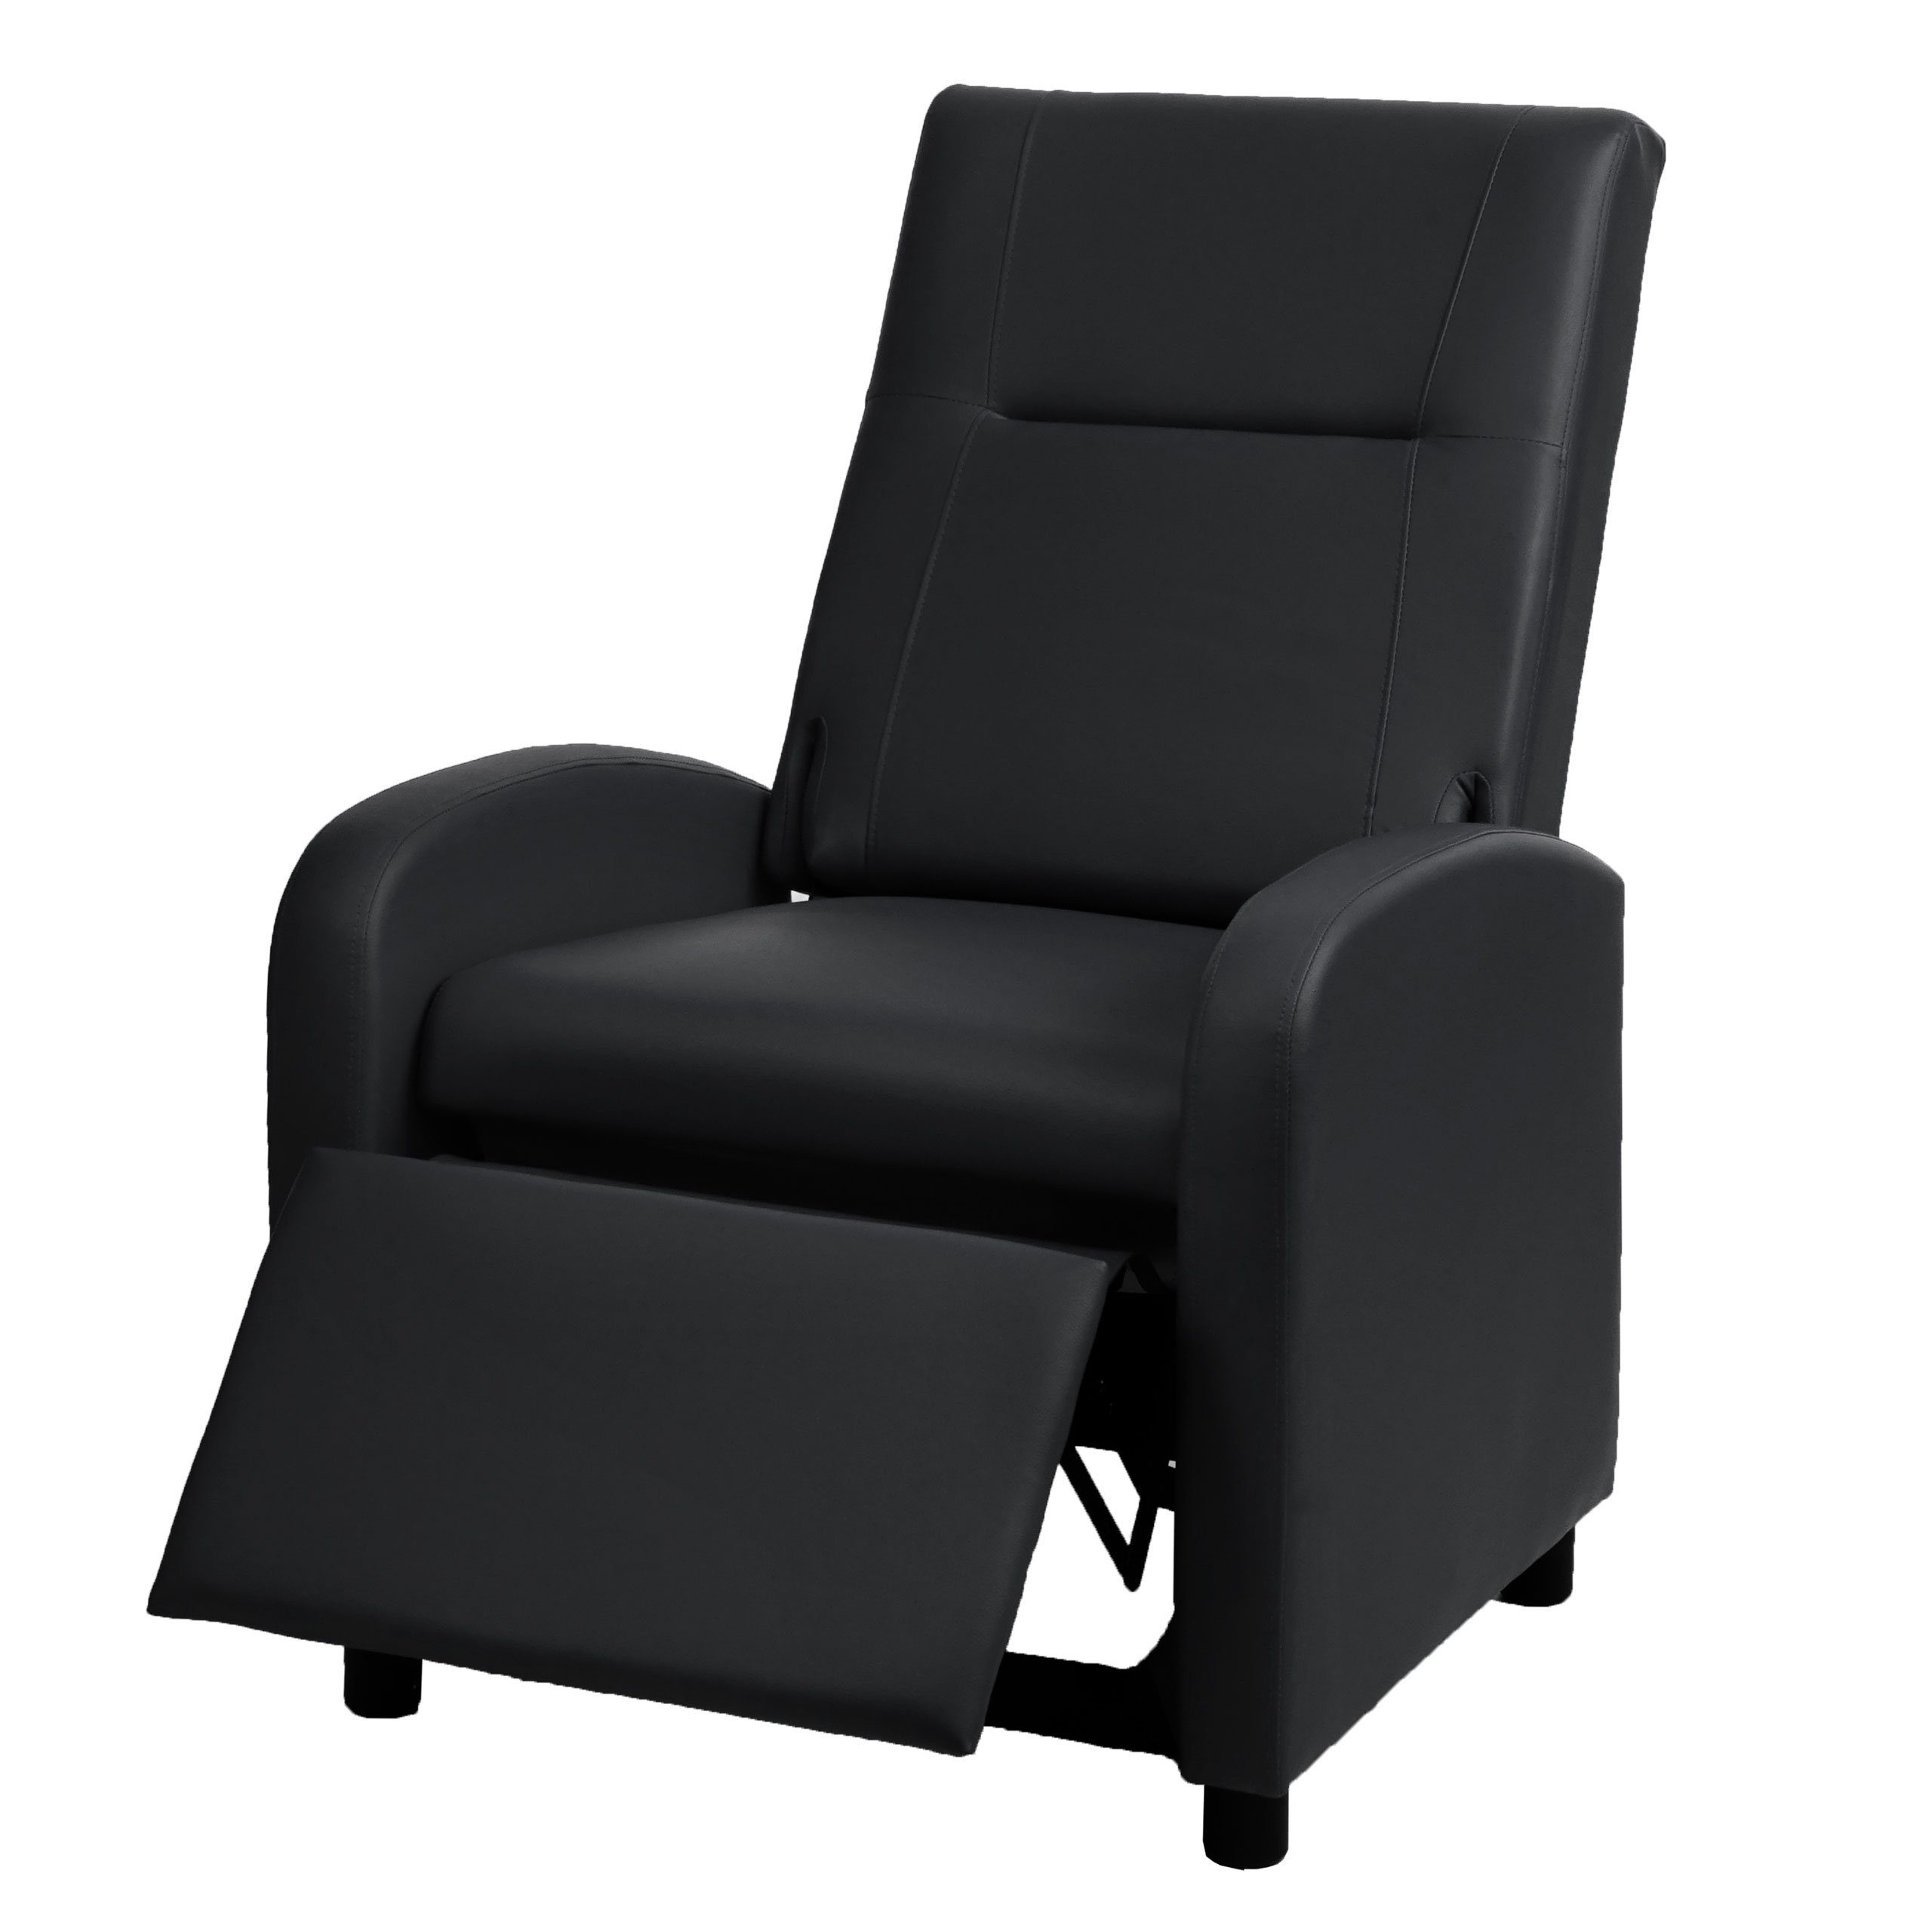 MCW TV-Sessel MCW-H18, Synchrone Verstellung der Rücken- und Fußlehne, Synchrone Verstellung der Rücken- und Fußlehne, Klappbare Rückenlehne schwarz